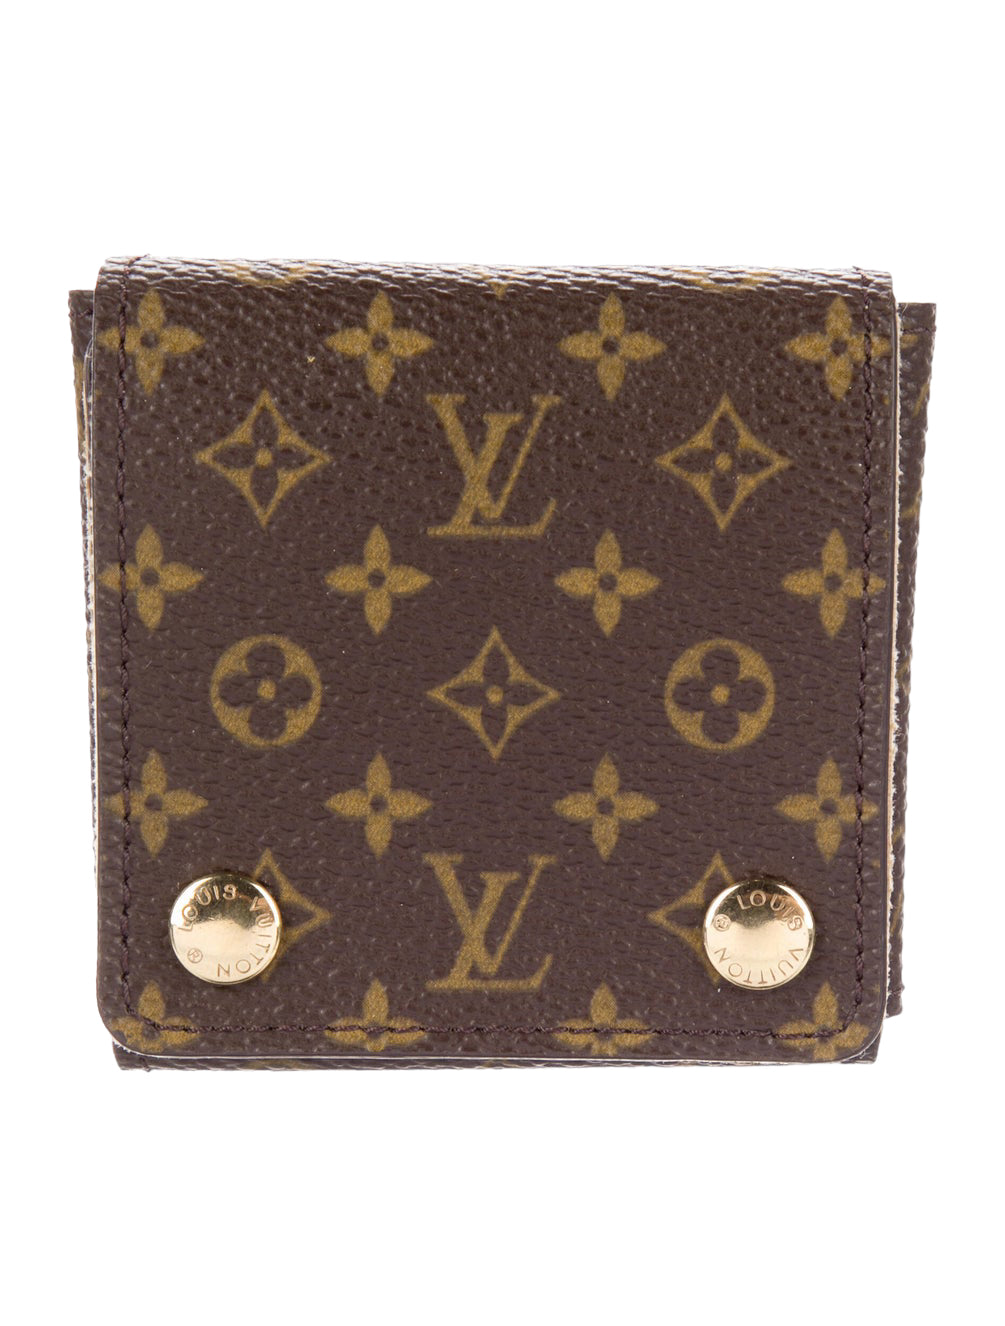 Shop Louis Vuitton MONOGRAM 2021-22FW Jewelry box (GI0555) by